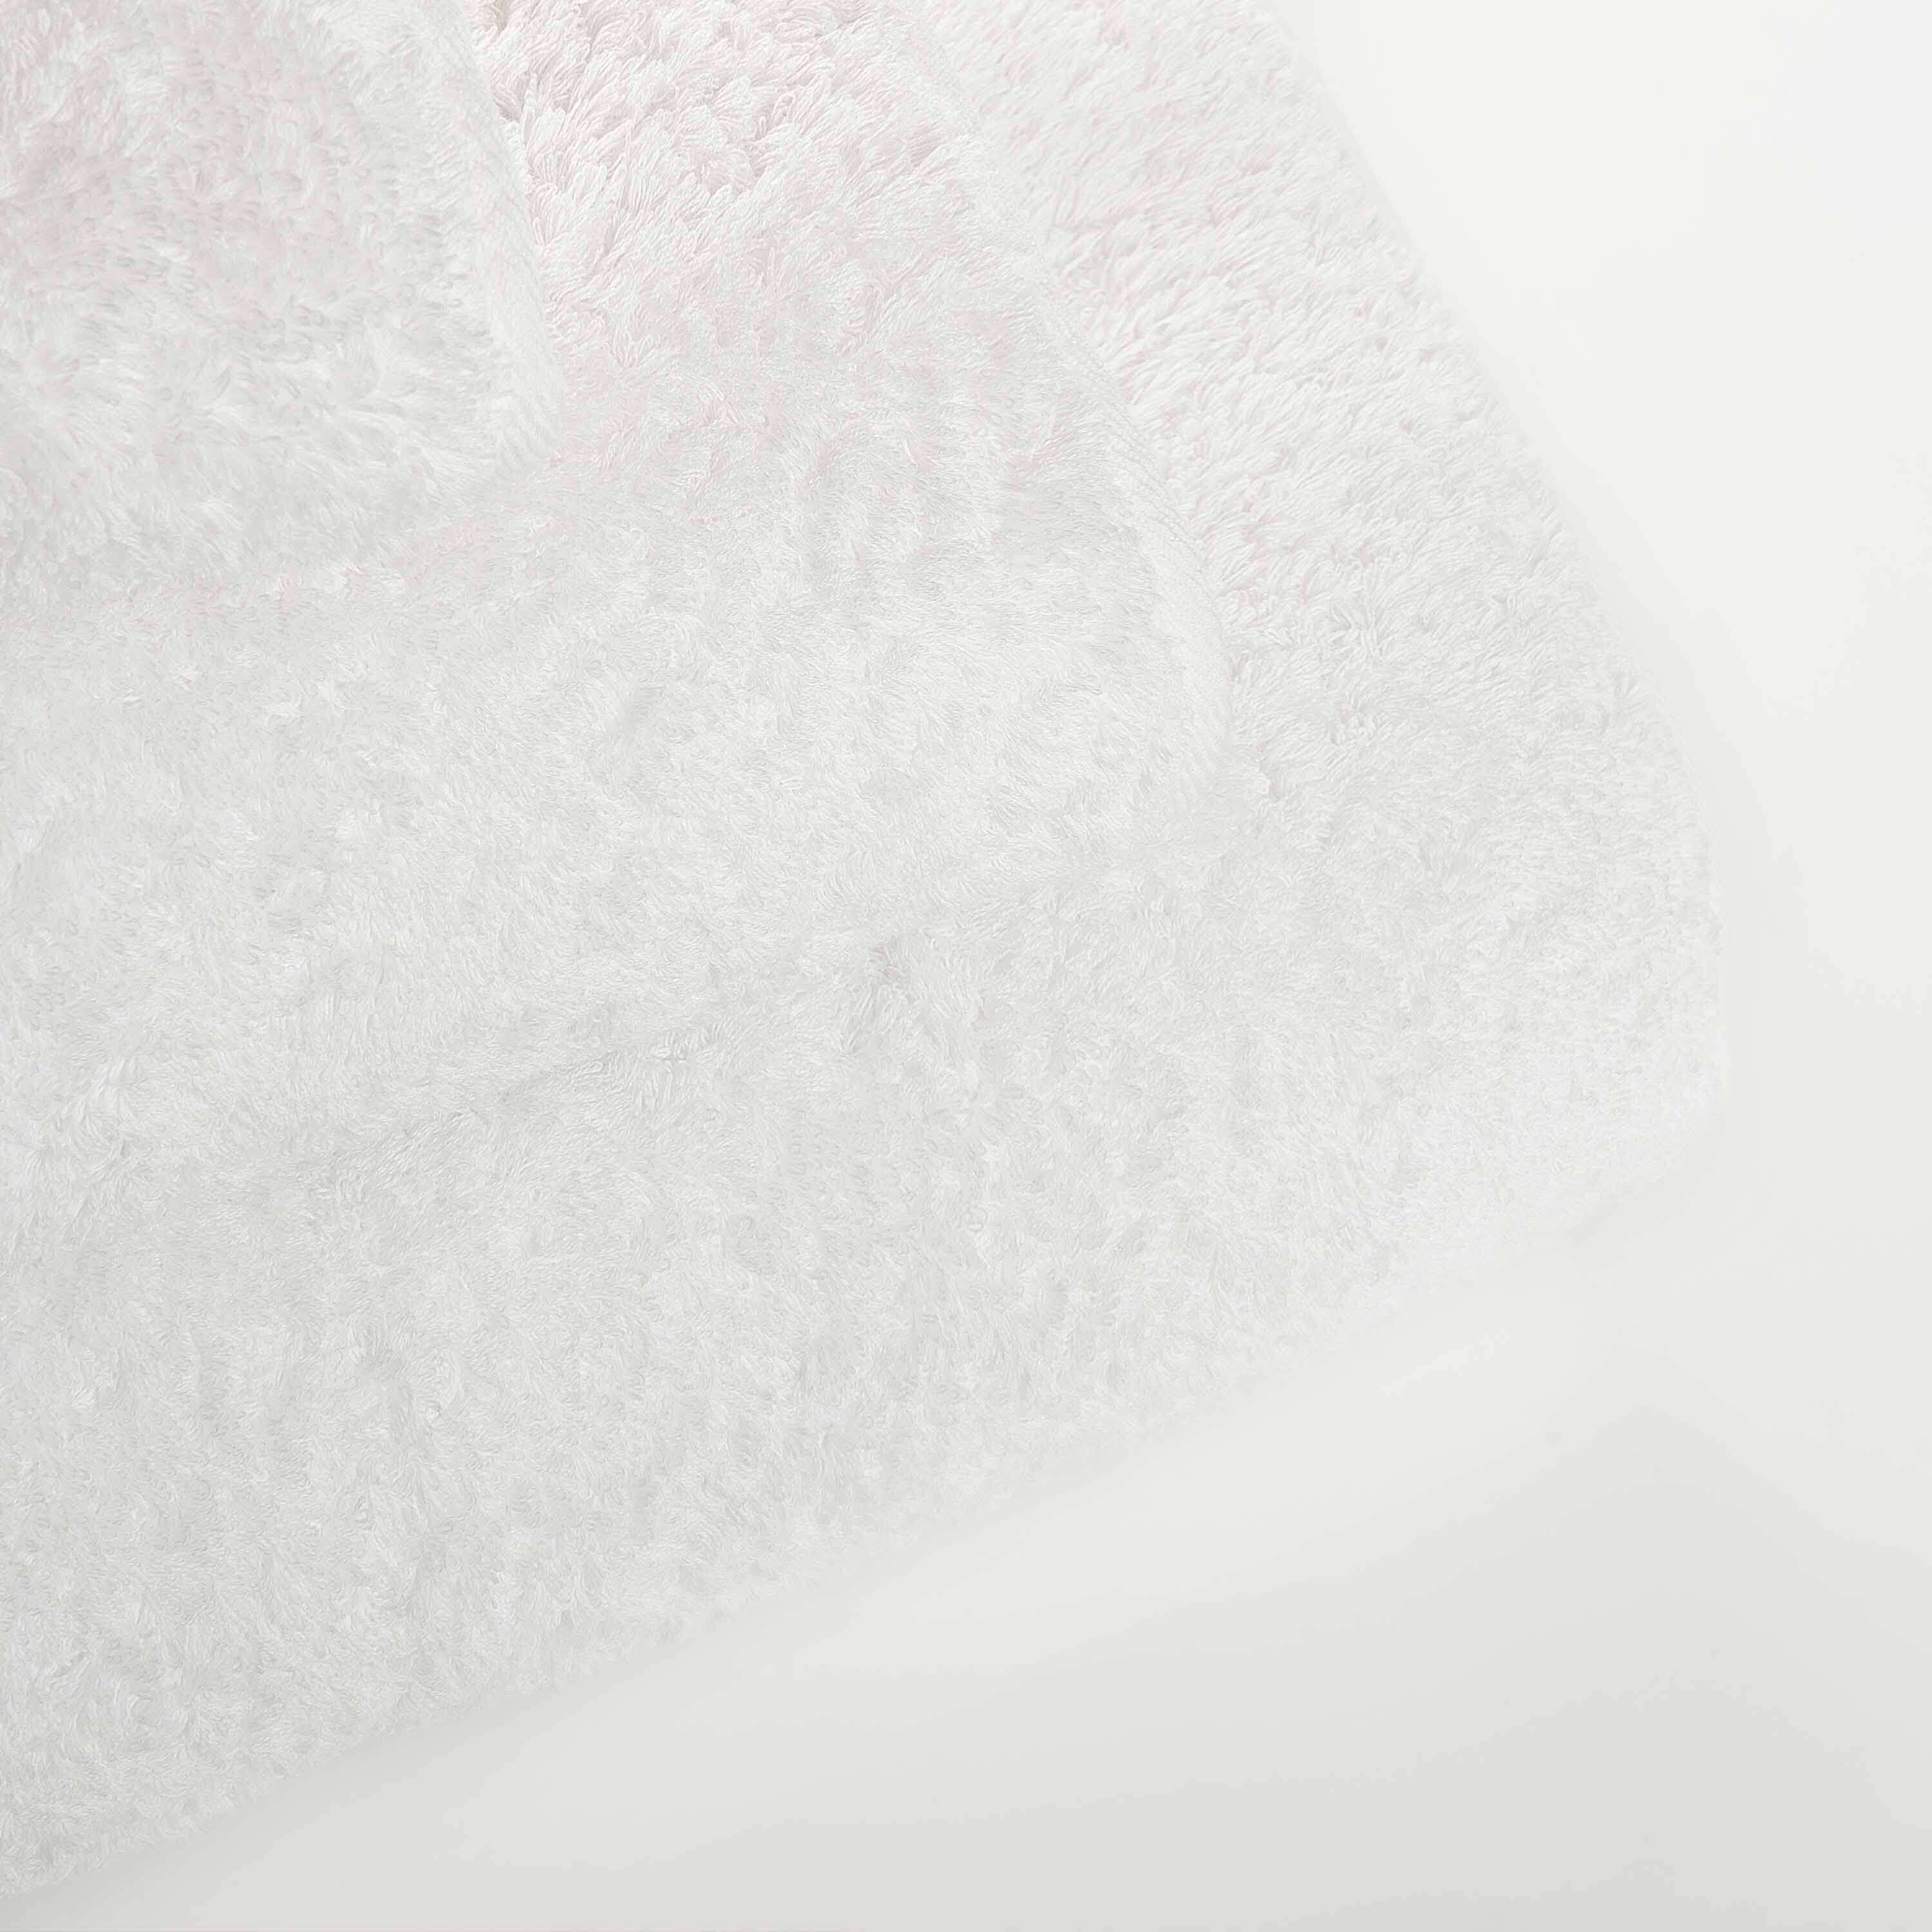 Элитное полотенце Egoist Range White ☞ Размер: 46 x 76 см